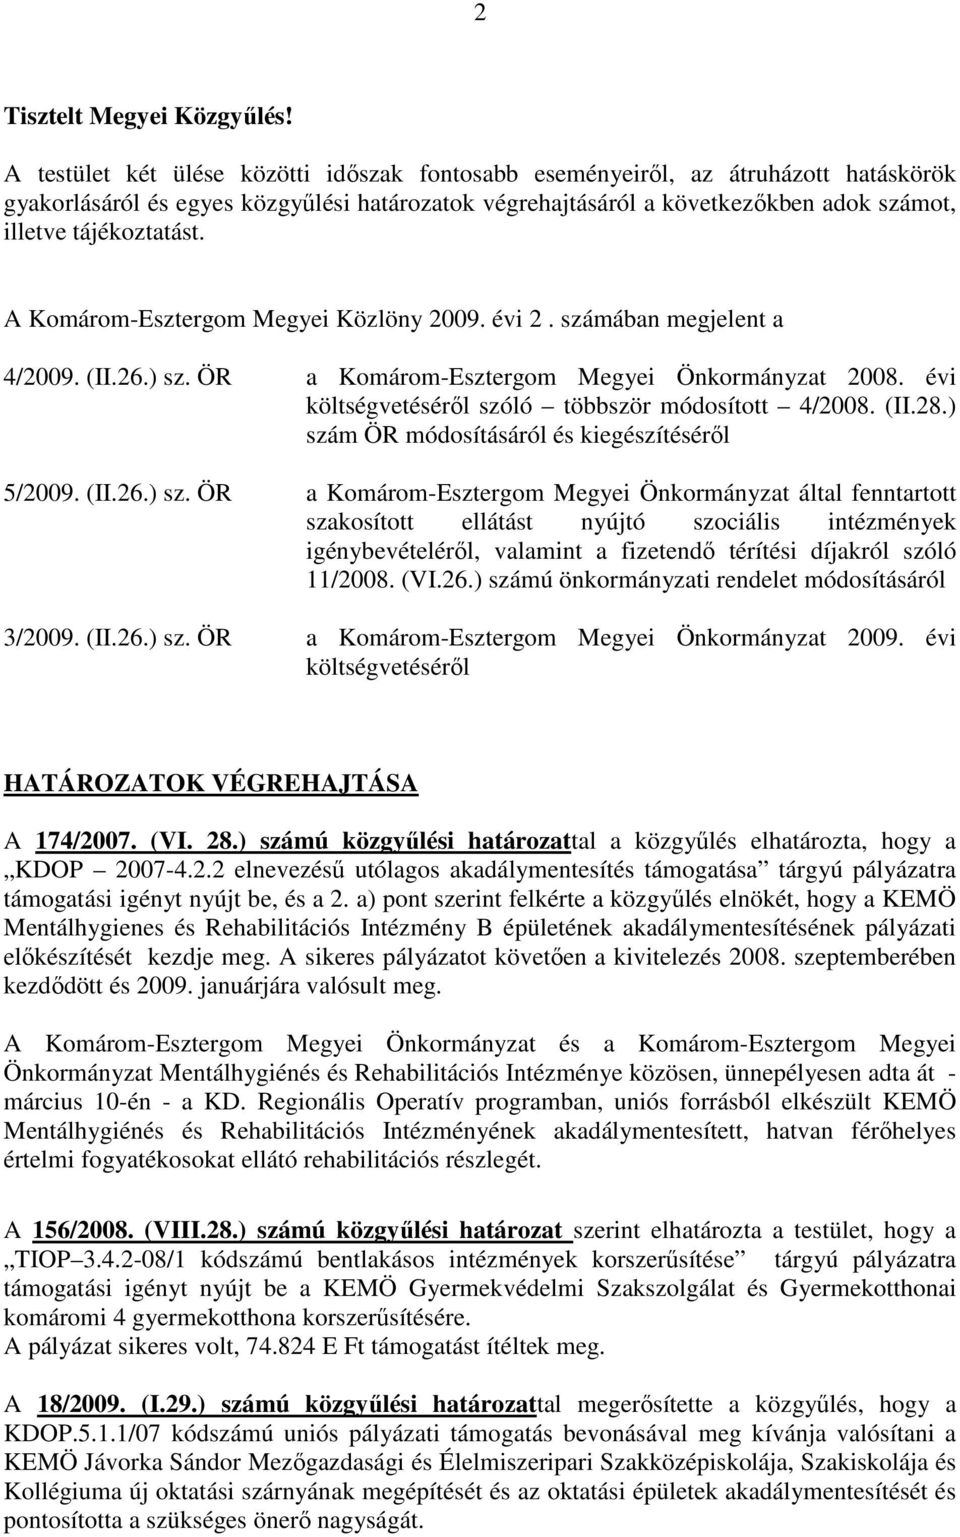 A Komárom-Esztergom Megyei Közlöny 2009. évi 2. számában megjelent a 4/2009. (II.26.) sz. ÖR a Komárom-Esztergom Megyei Önkormányzat 2008. évi költségvetésérıl szóló többször módosított 4/2008. (II.28.